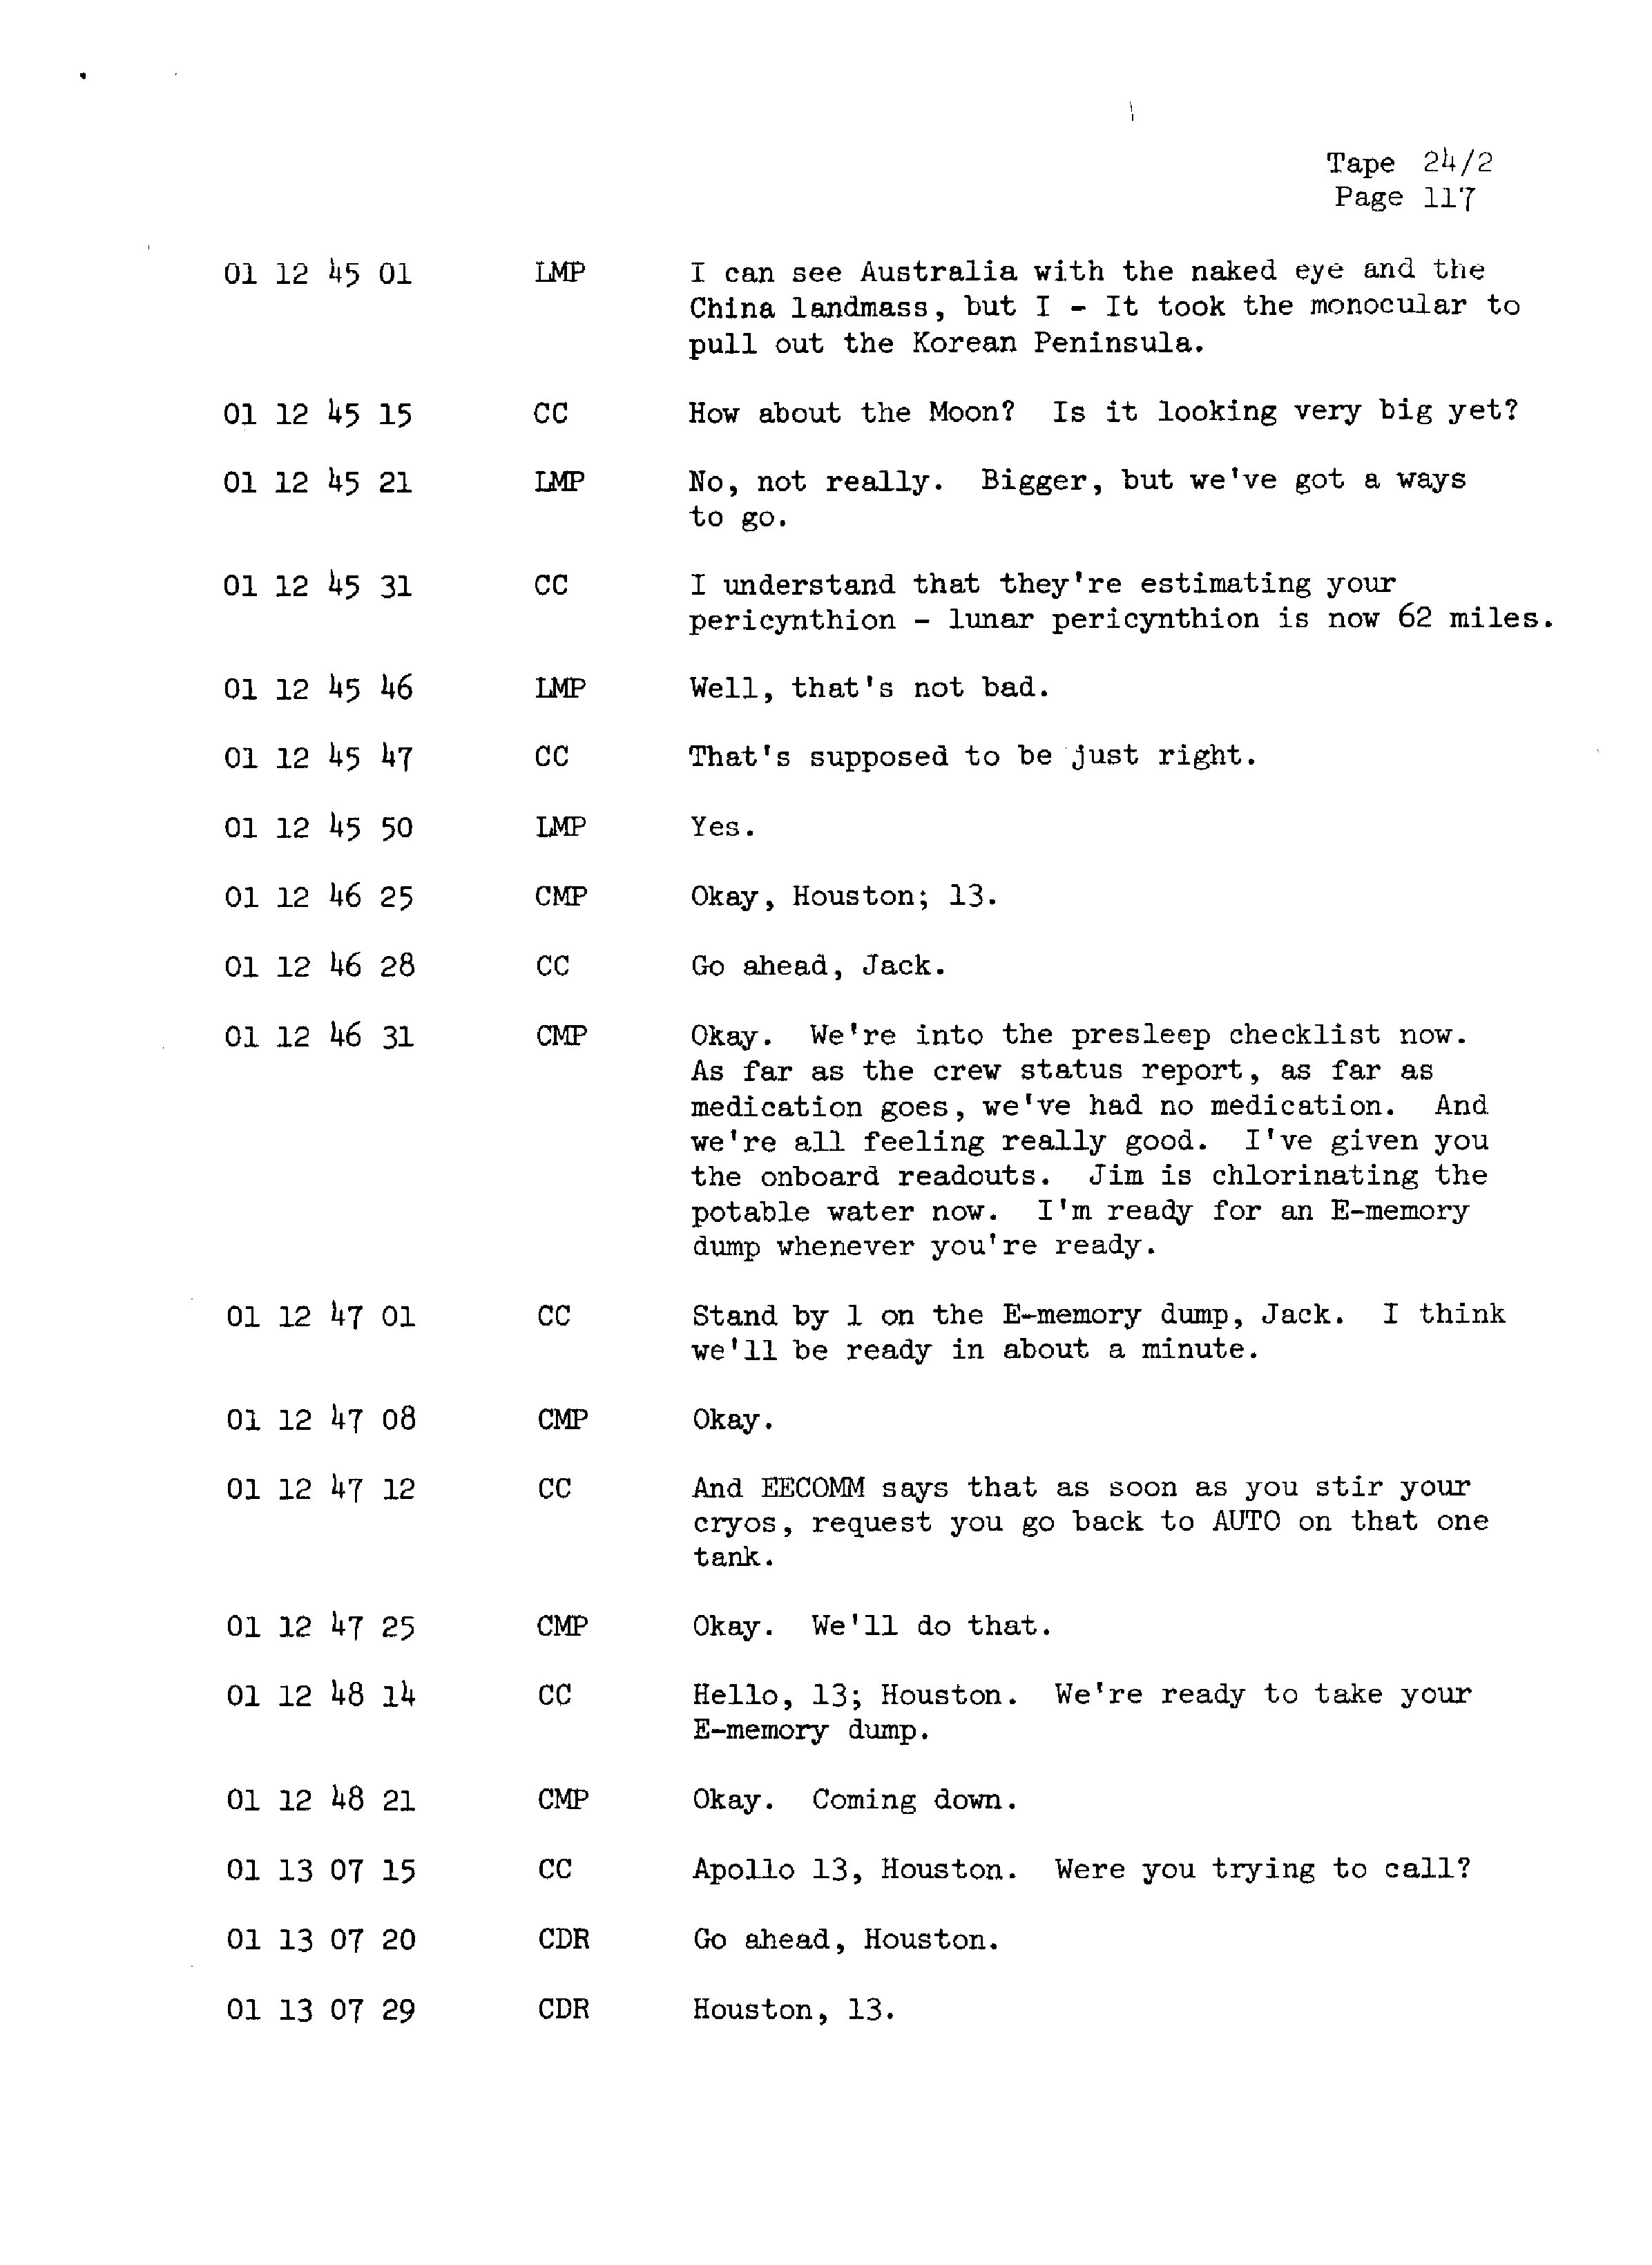 Page 124 of Apollo 13’s original transcript